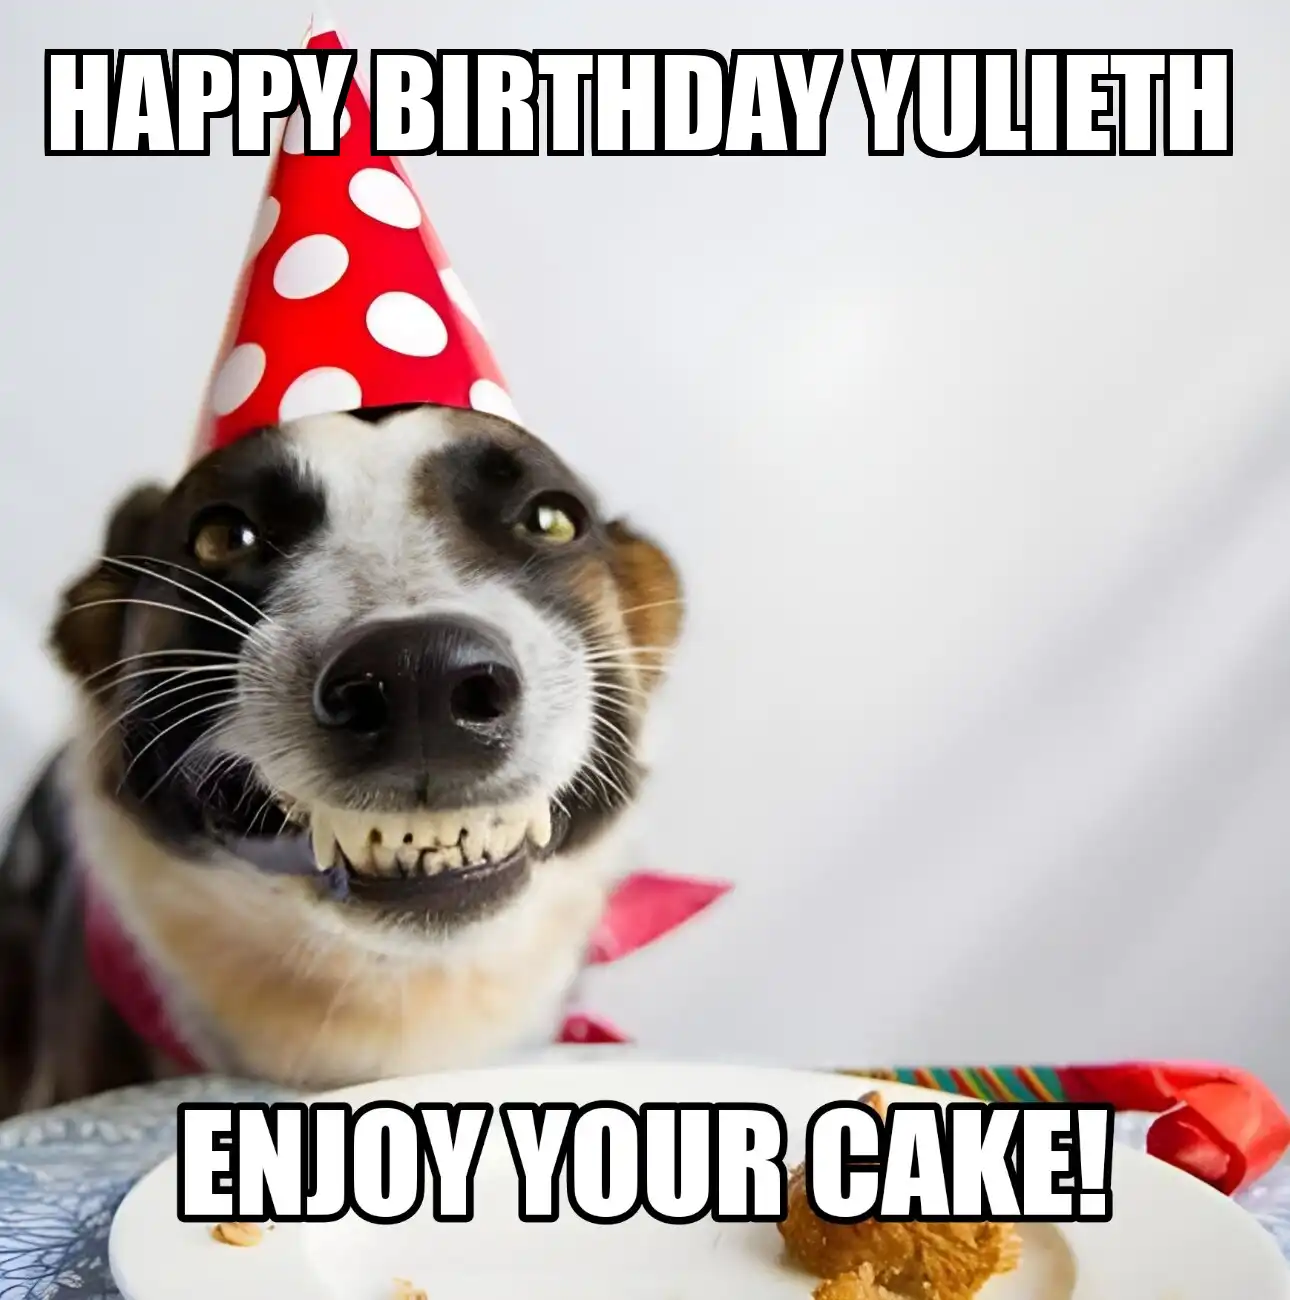 Happy Birthday Yulieth Enjoy Your Cake Dog Meme